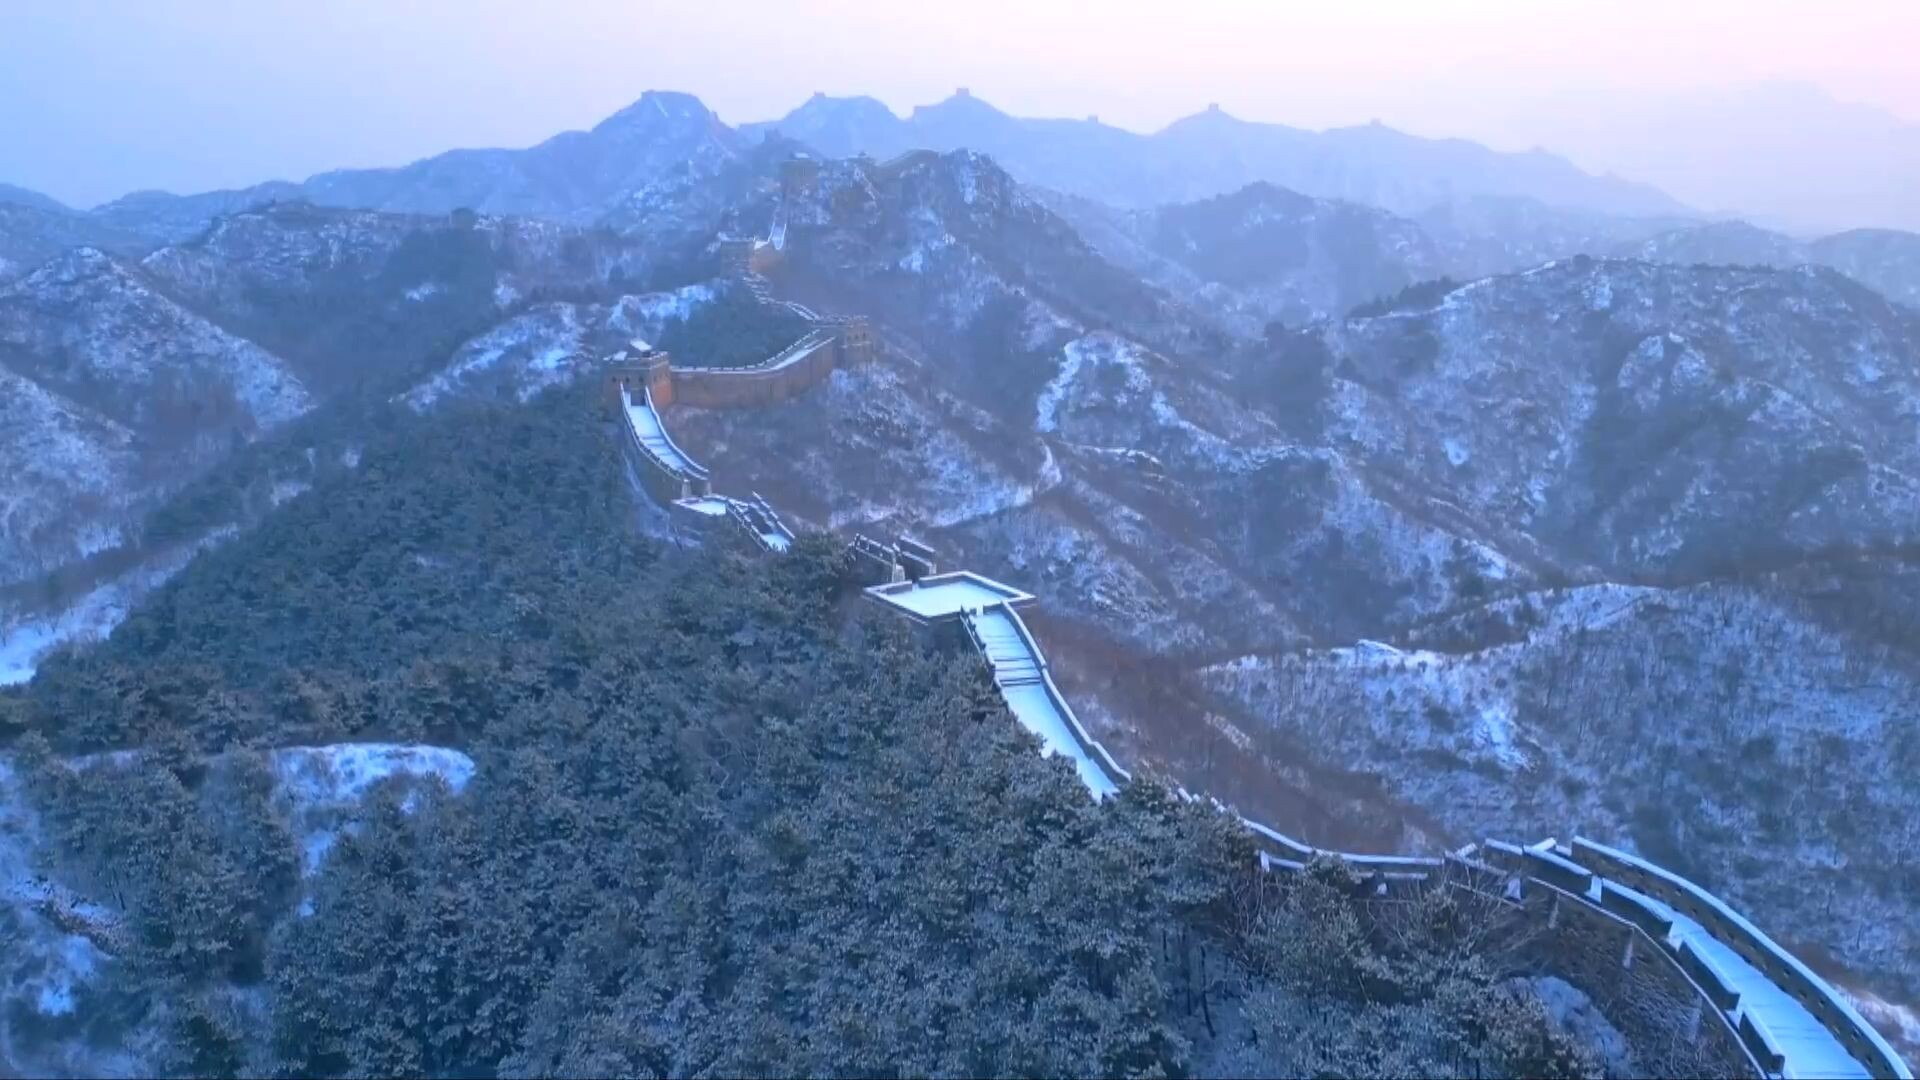 กำแพงเมืองจีน ด่านจินซานหลิ่ง งดงามรับหิมะแรกของปี